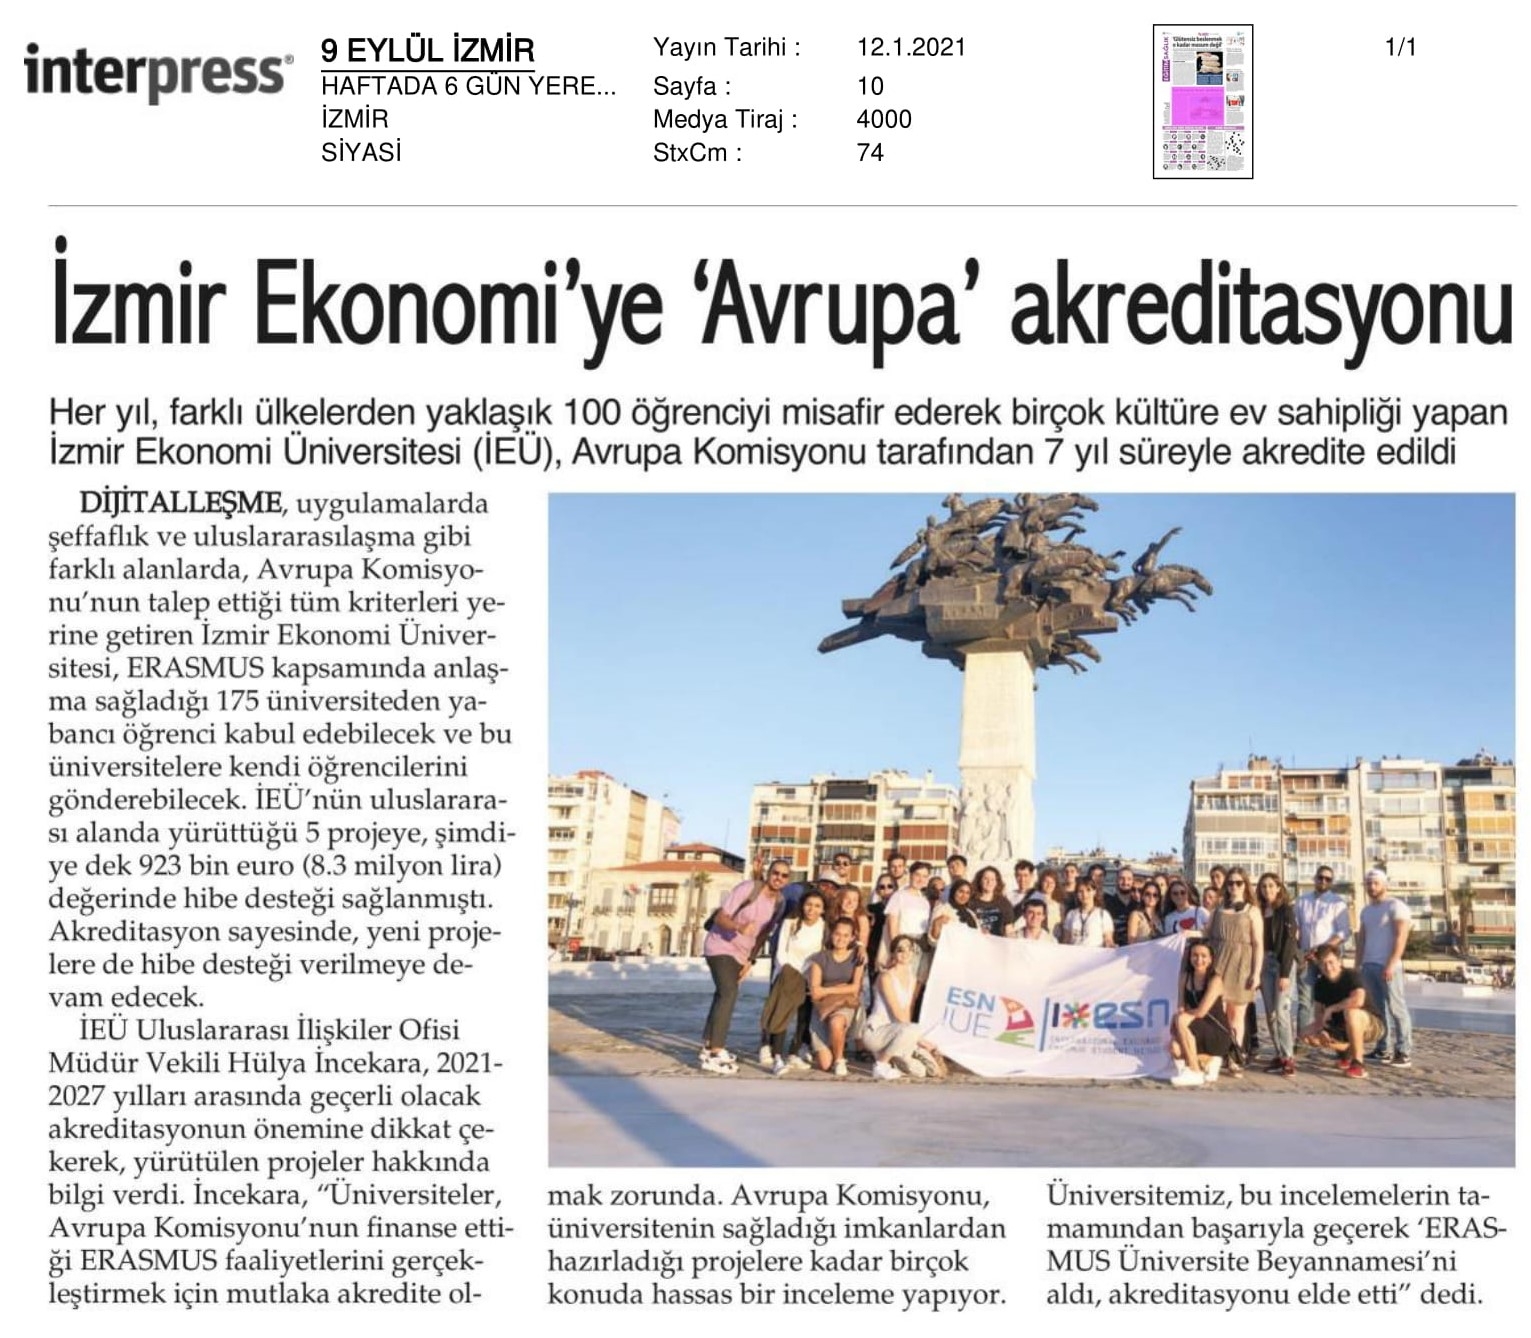 İzmir Ekonomi’ye ‘Avrupa’ akreditasyonu